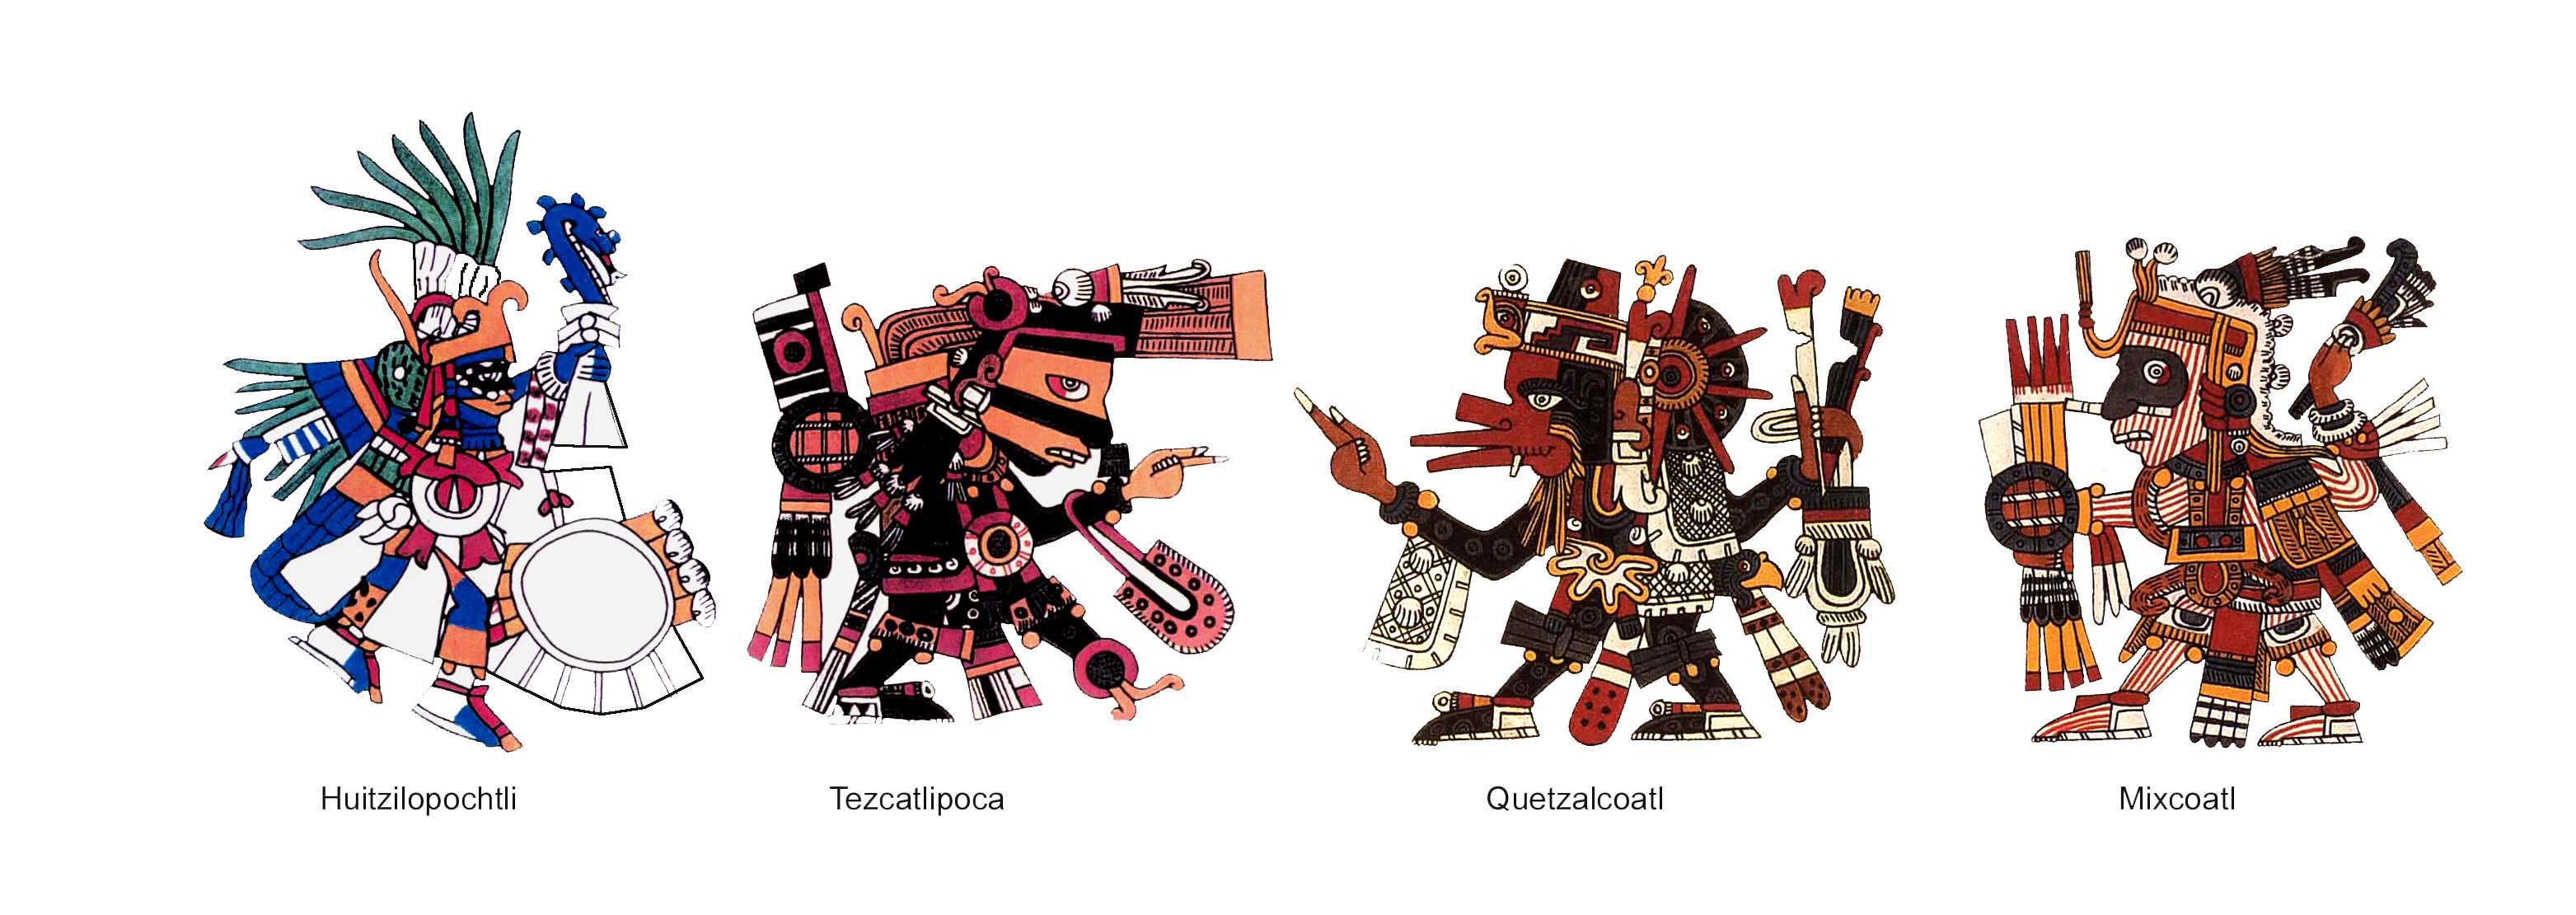 Hutzlopatchi; Tezcatlipoca; Quetzalcoatl; Mixcoatl